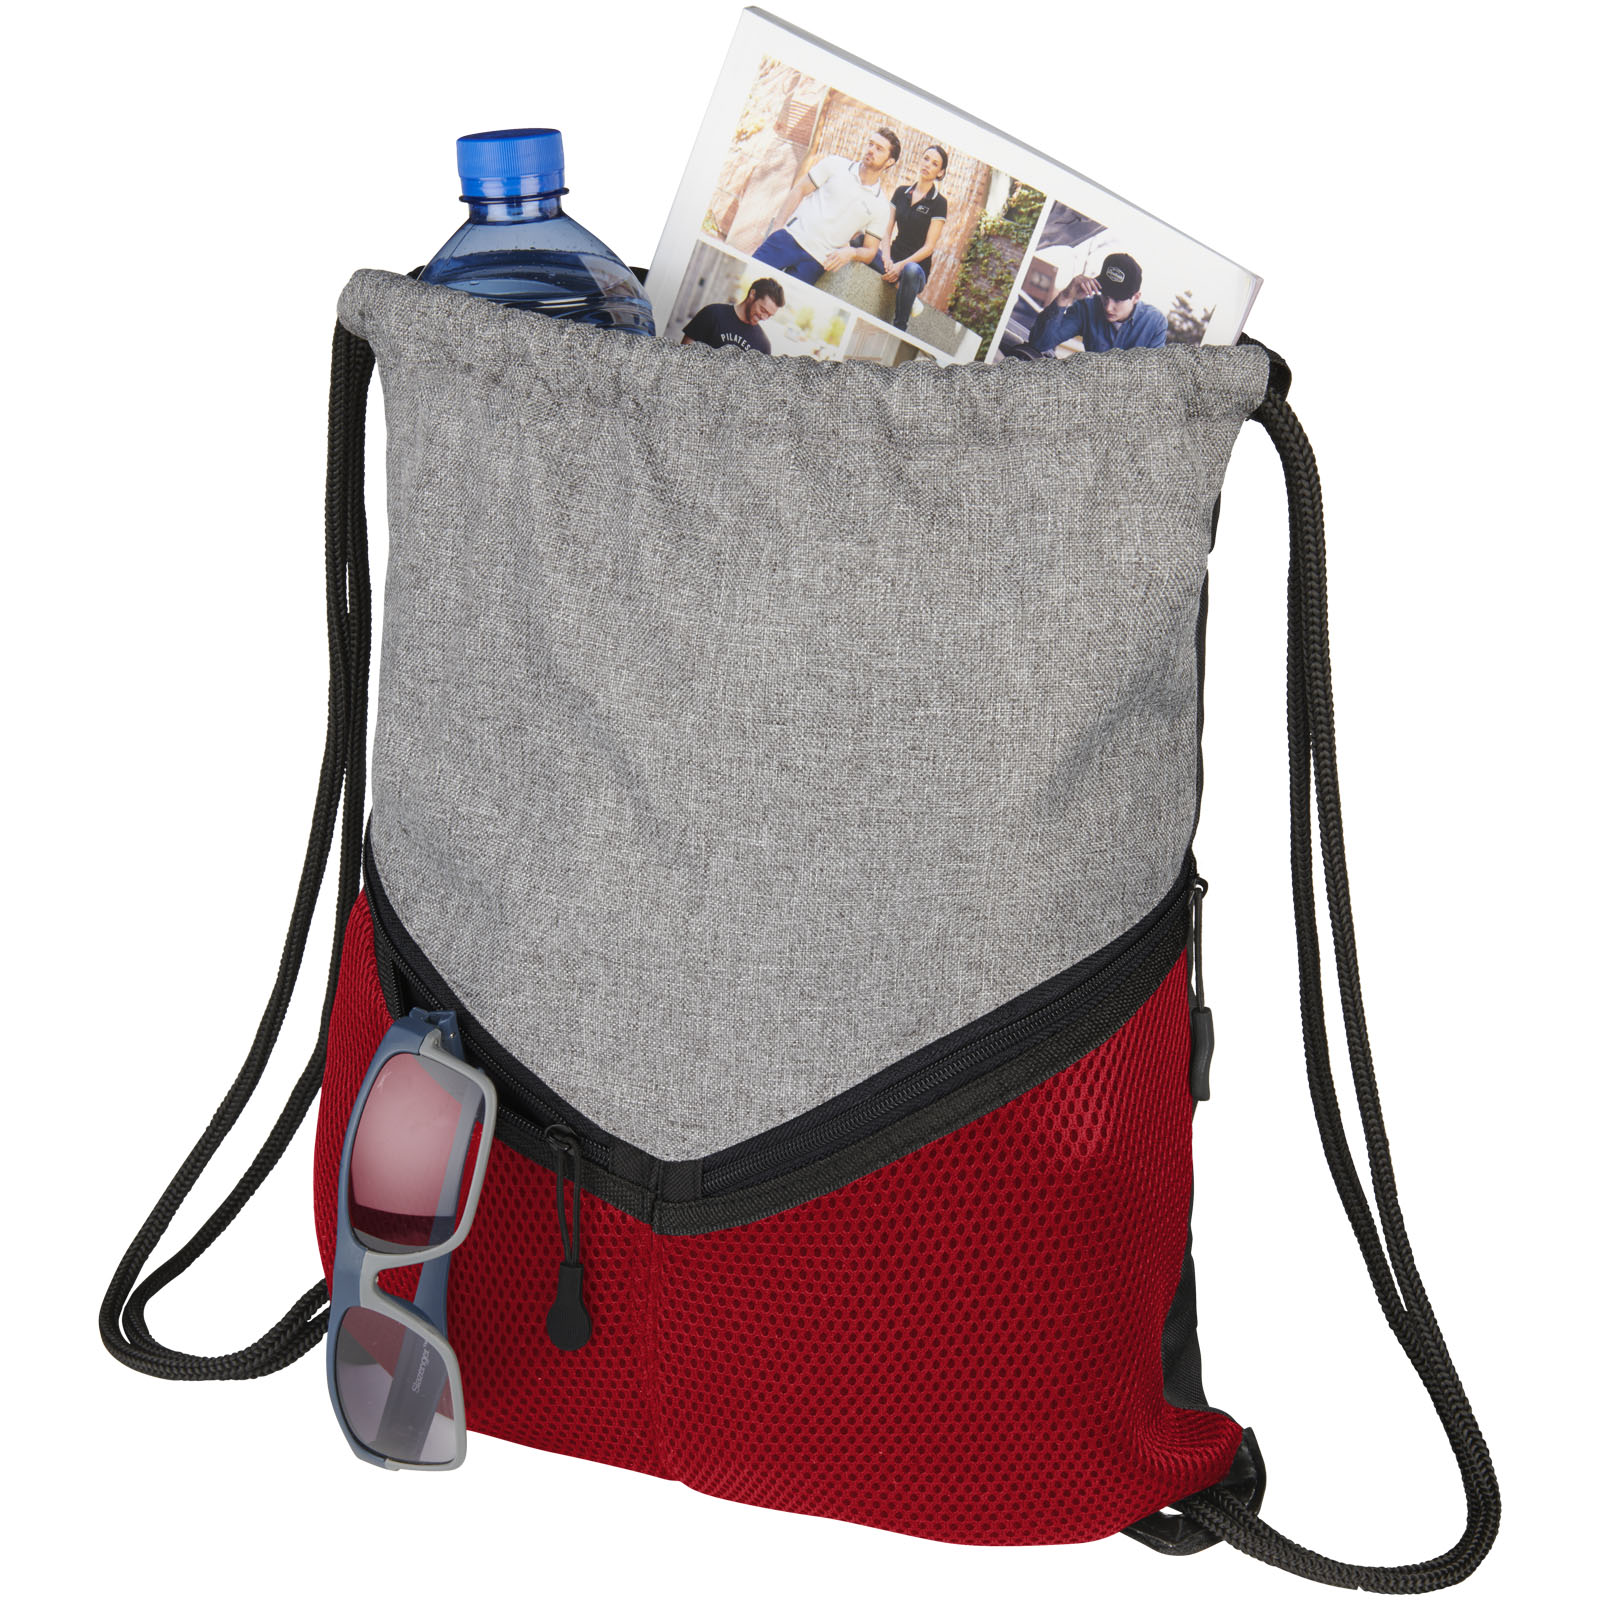 Advertising Drawstring Bags - Voyager drawstring bag 6L